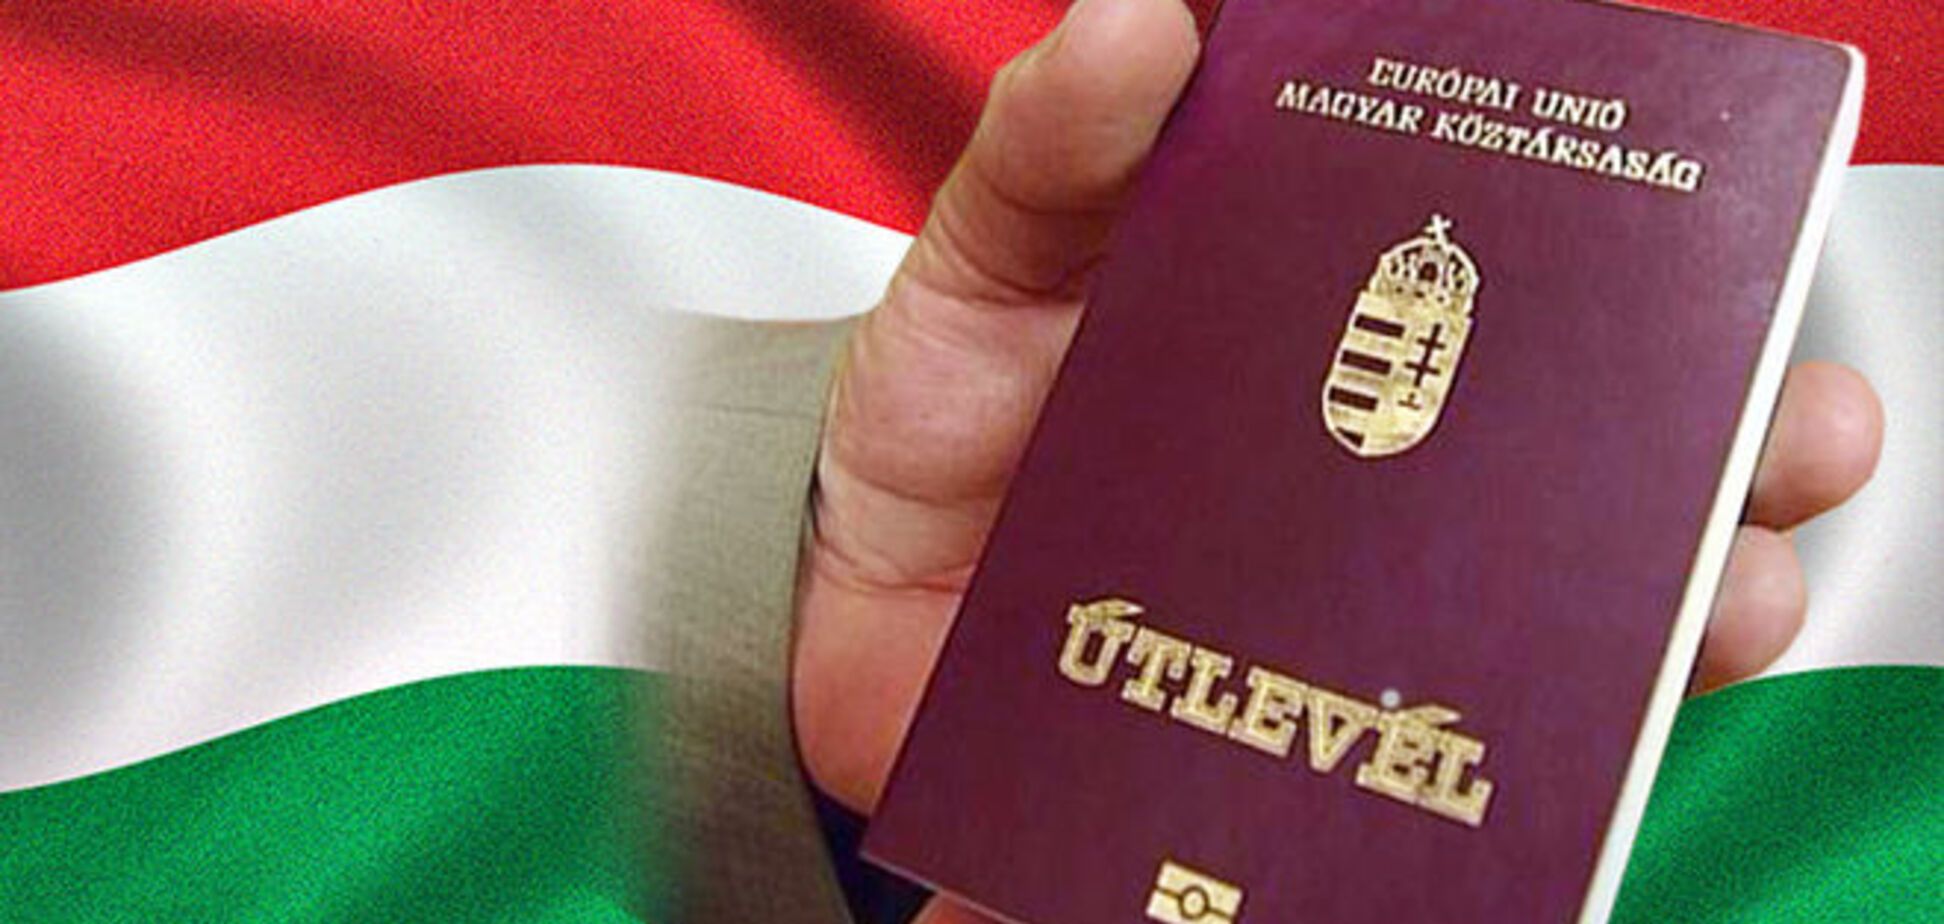 Будапешт позбавив громадянства Угорщини п'ятьох українців